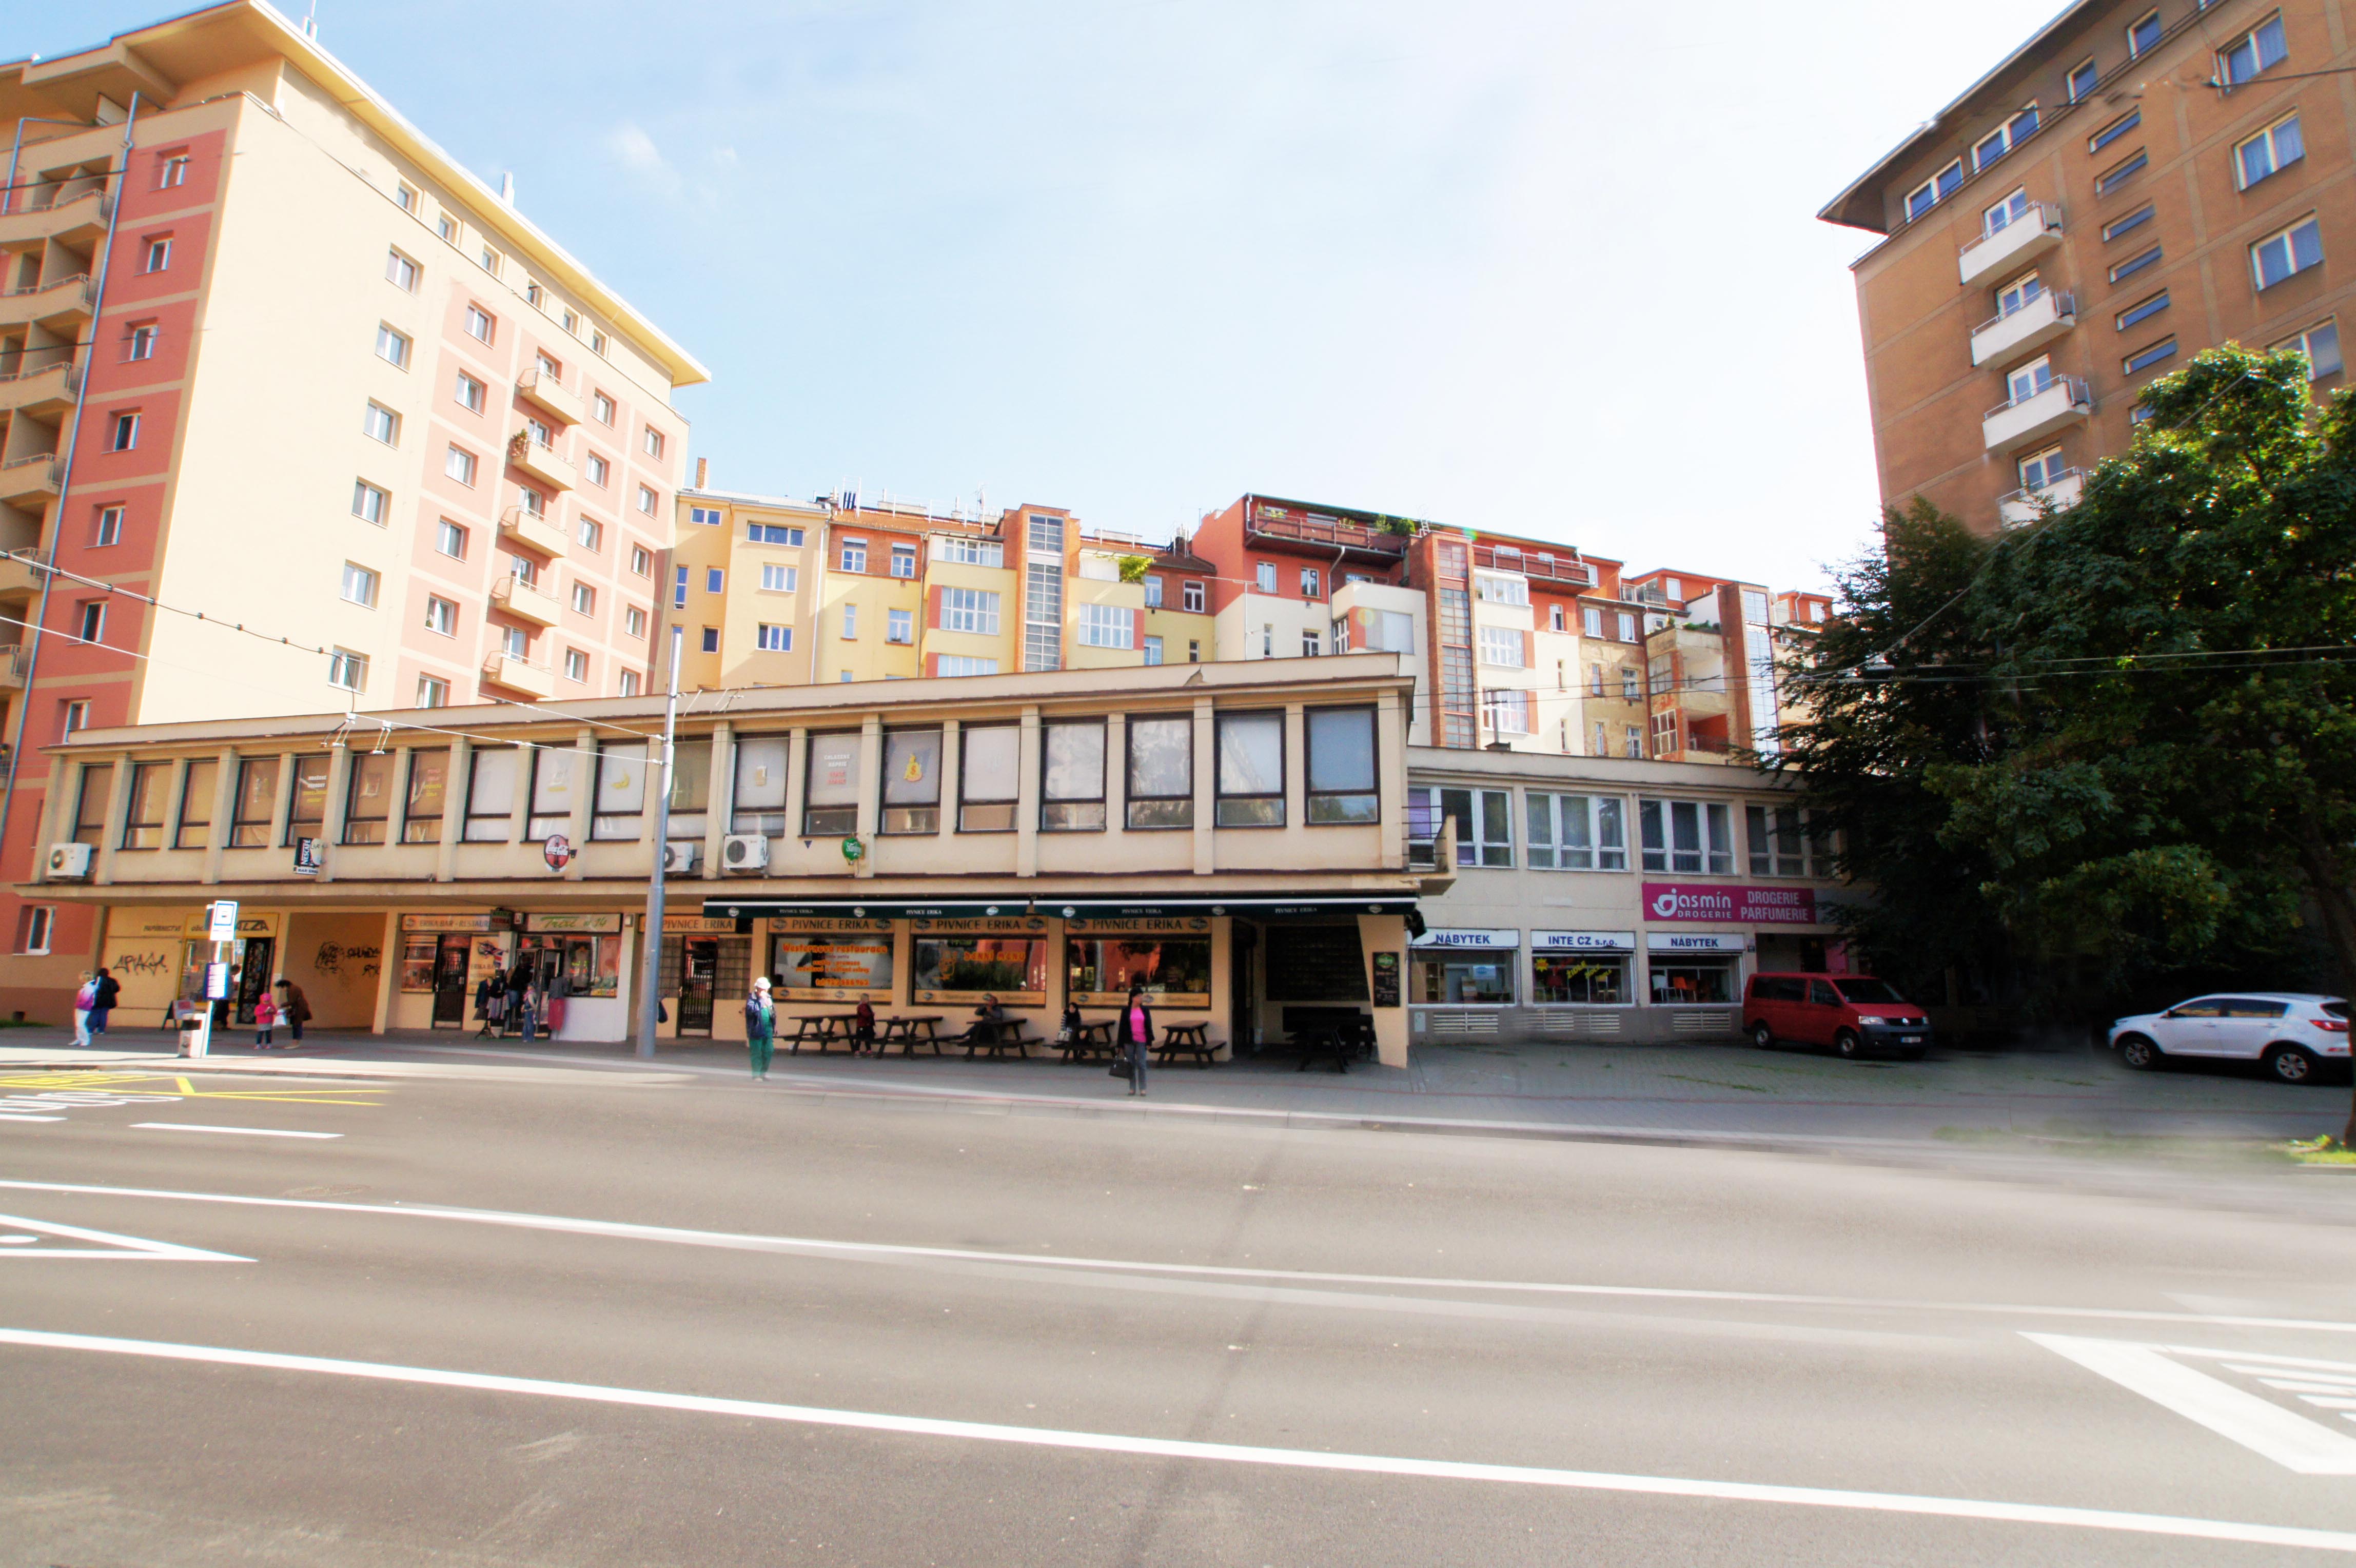 Obchodní centrum Tivoli v Brně před rekonstrukcí v roce 2014